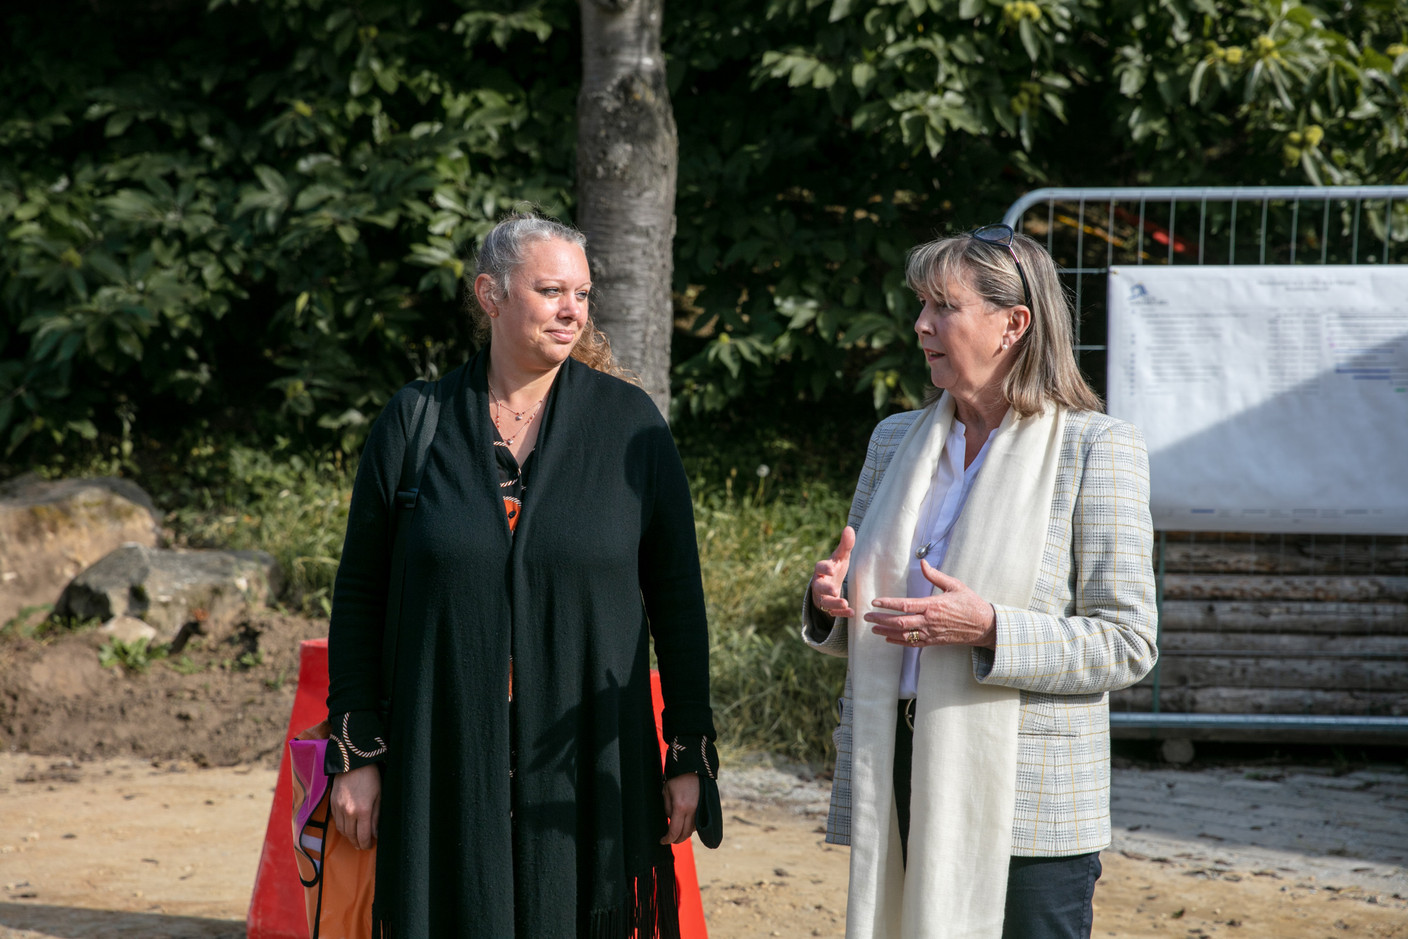  La ministre de l’Environnement, du Climat et du Développement durable, Carole Dieschbourg (déi Gréng), a accompagné Lydie Polfer (DP), lors de la visite du chantier en cours. (Photo: Romain Gamba/Maison Moderne)